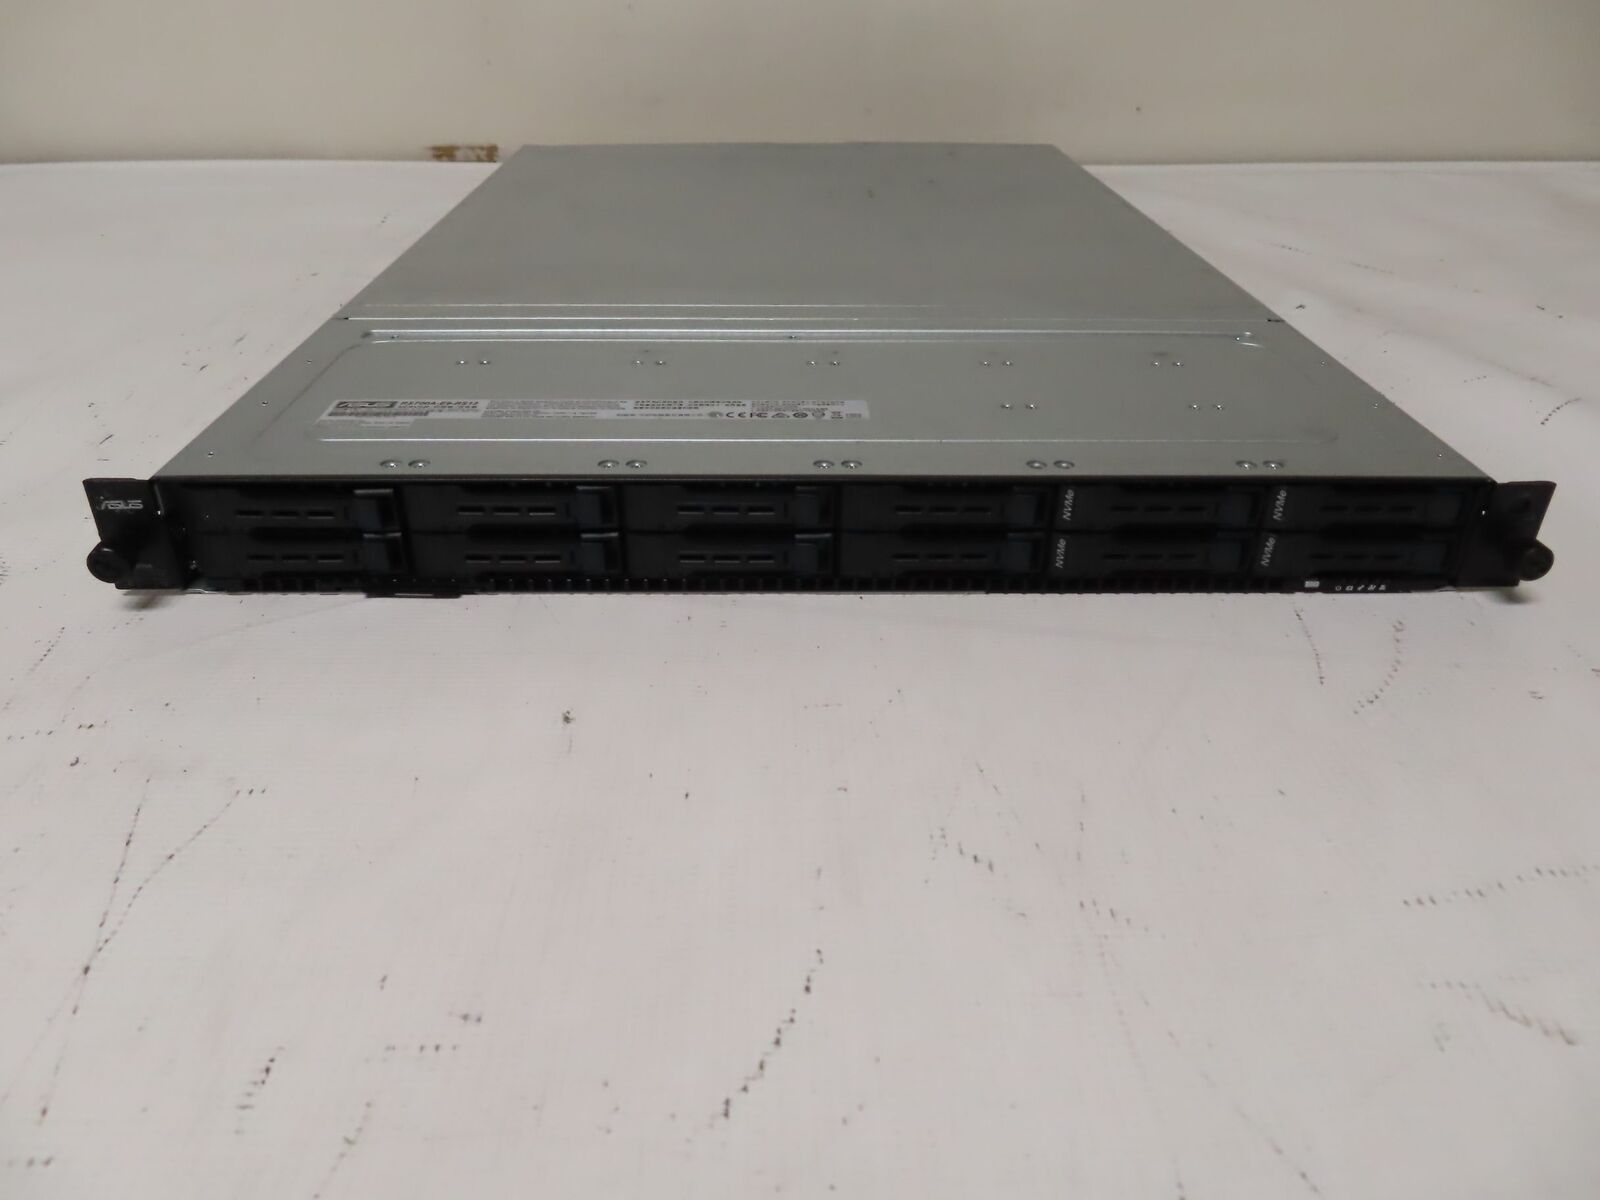 Asus RS700A-E9-RS12 1U Server 2x Epyc 7502 2.5ghz 256GB 2x 1.6TB NVME 2x 800W